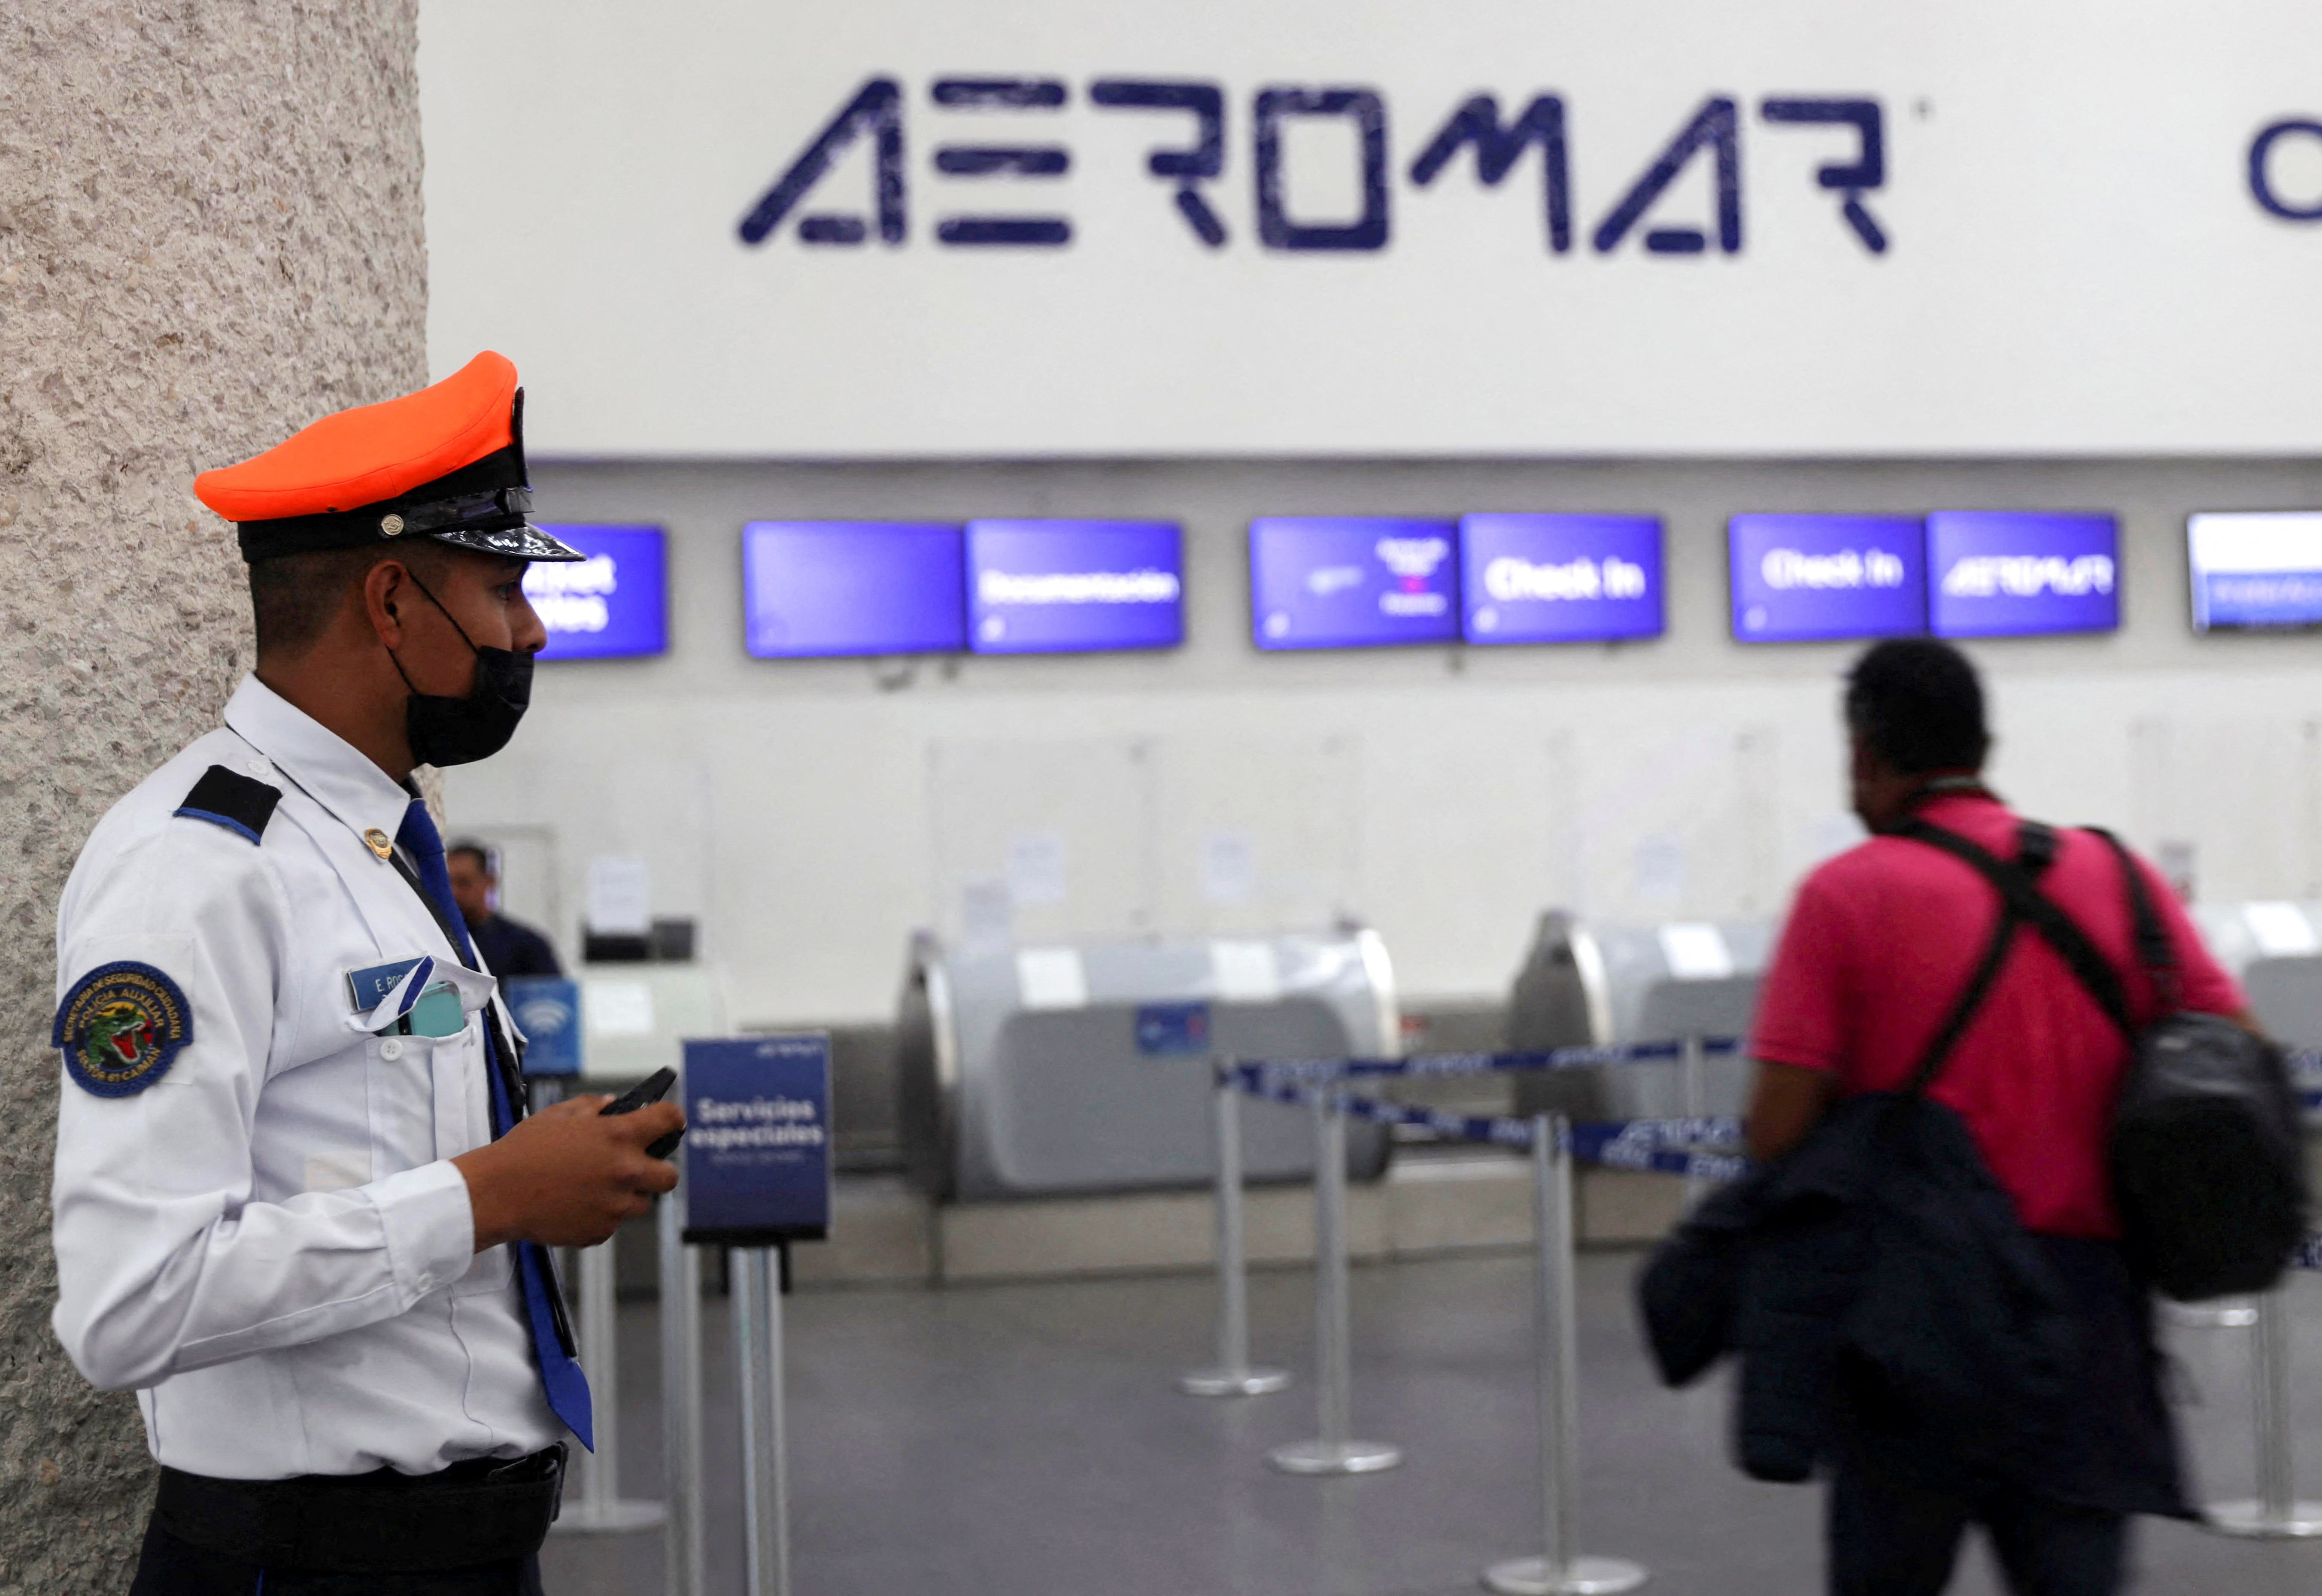 Aeromar dejó de operar por problemas financieros. REUTERS/Luis Cortes